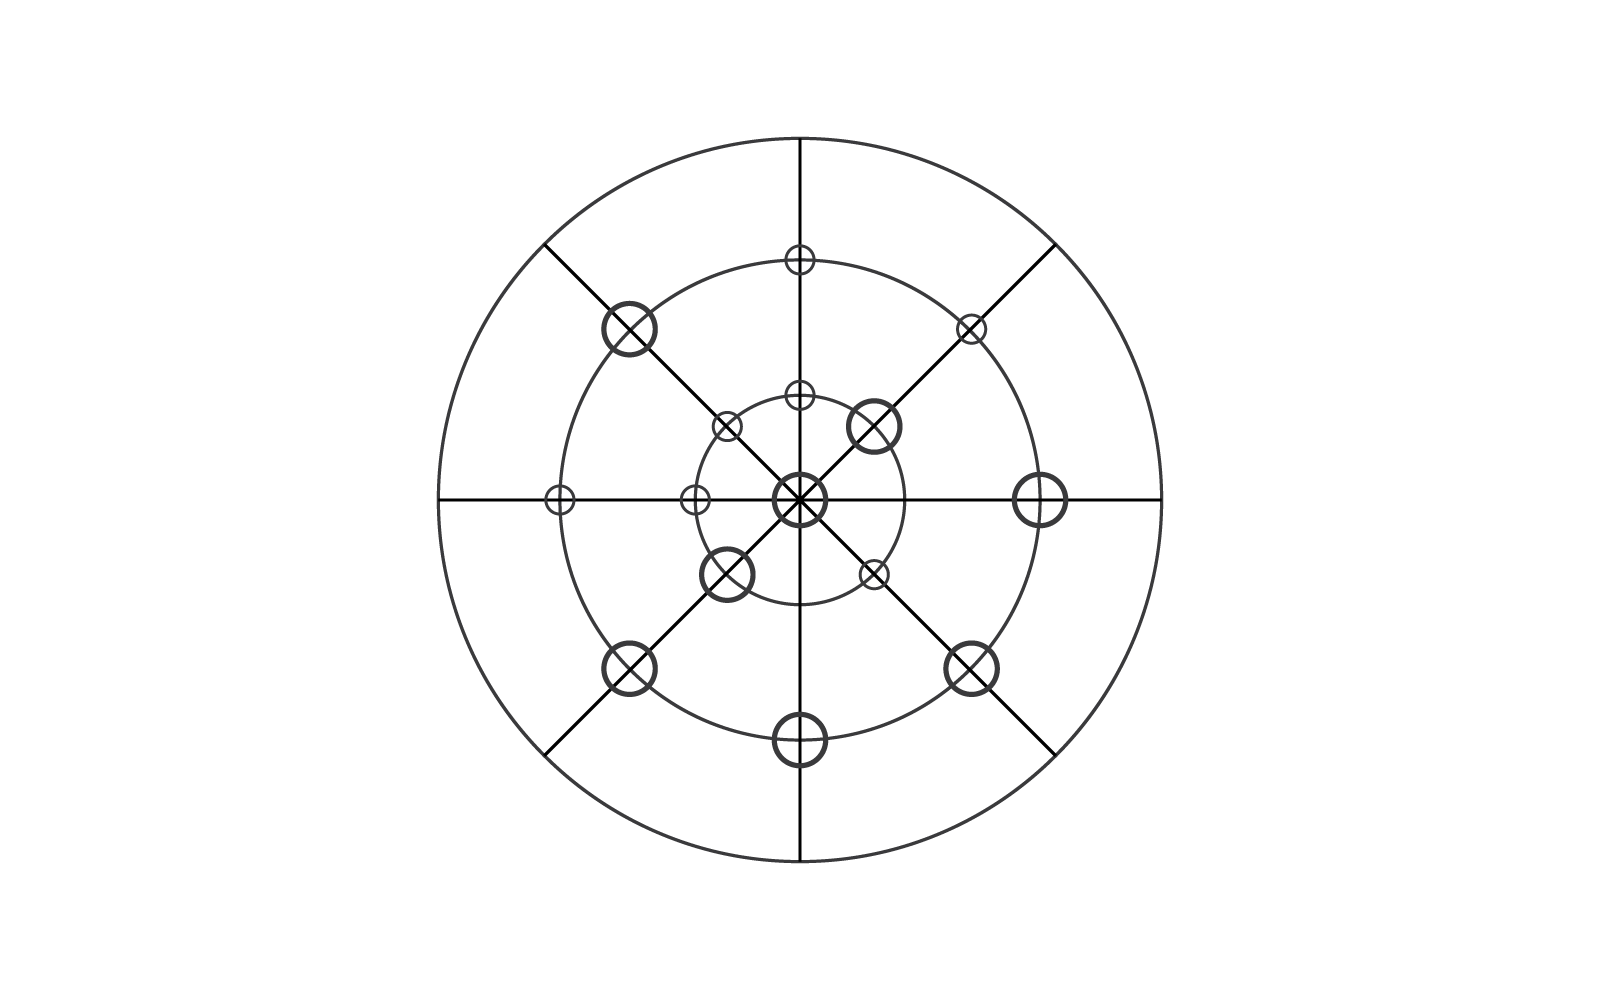 Orbita, połączenie lub sieć wektor płaski szablon projektu